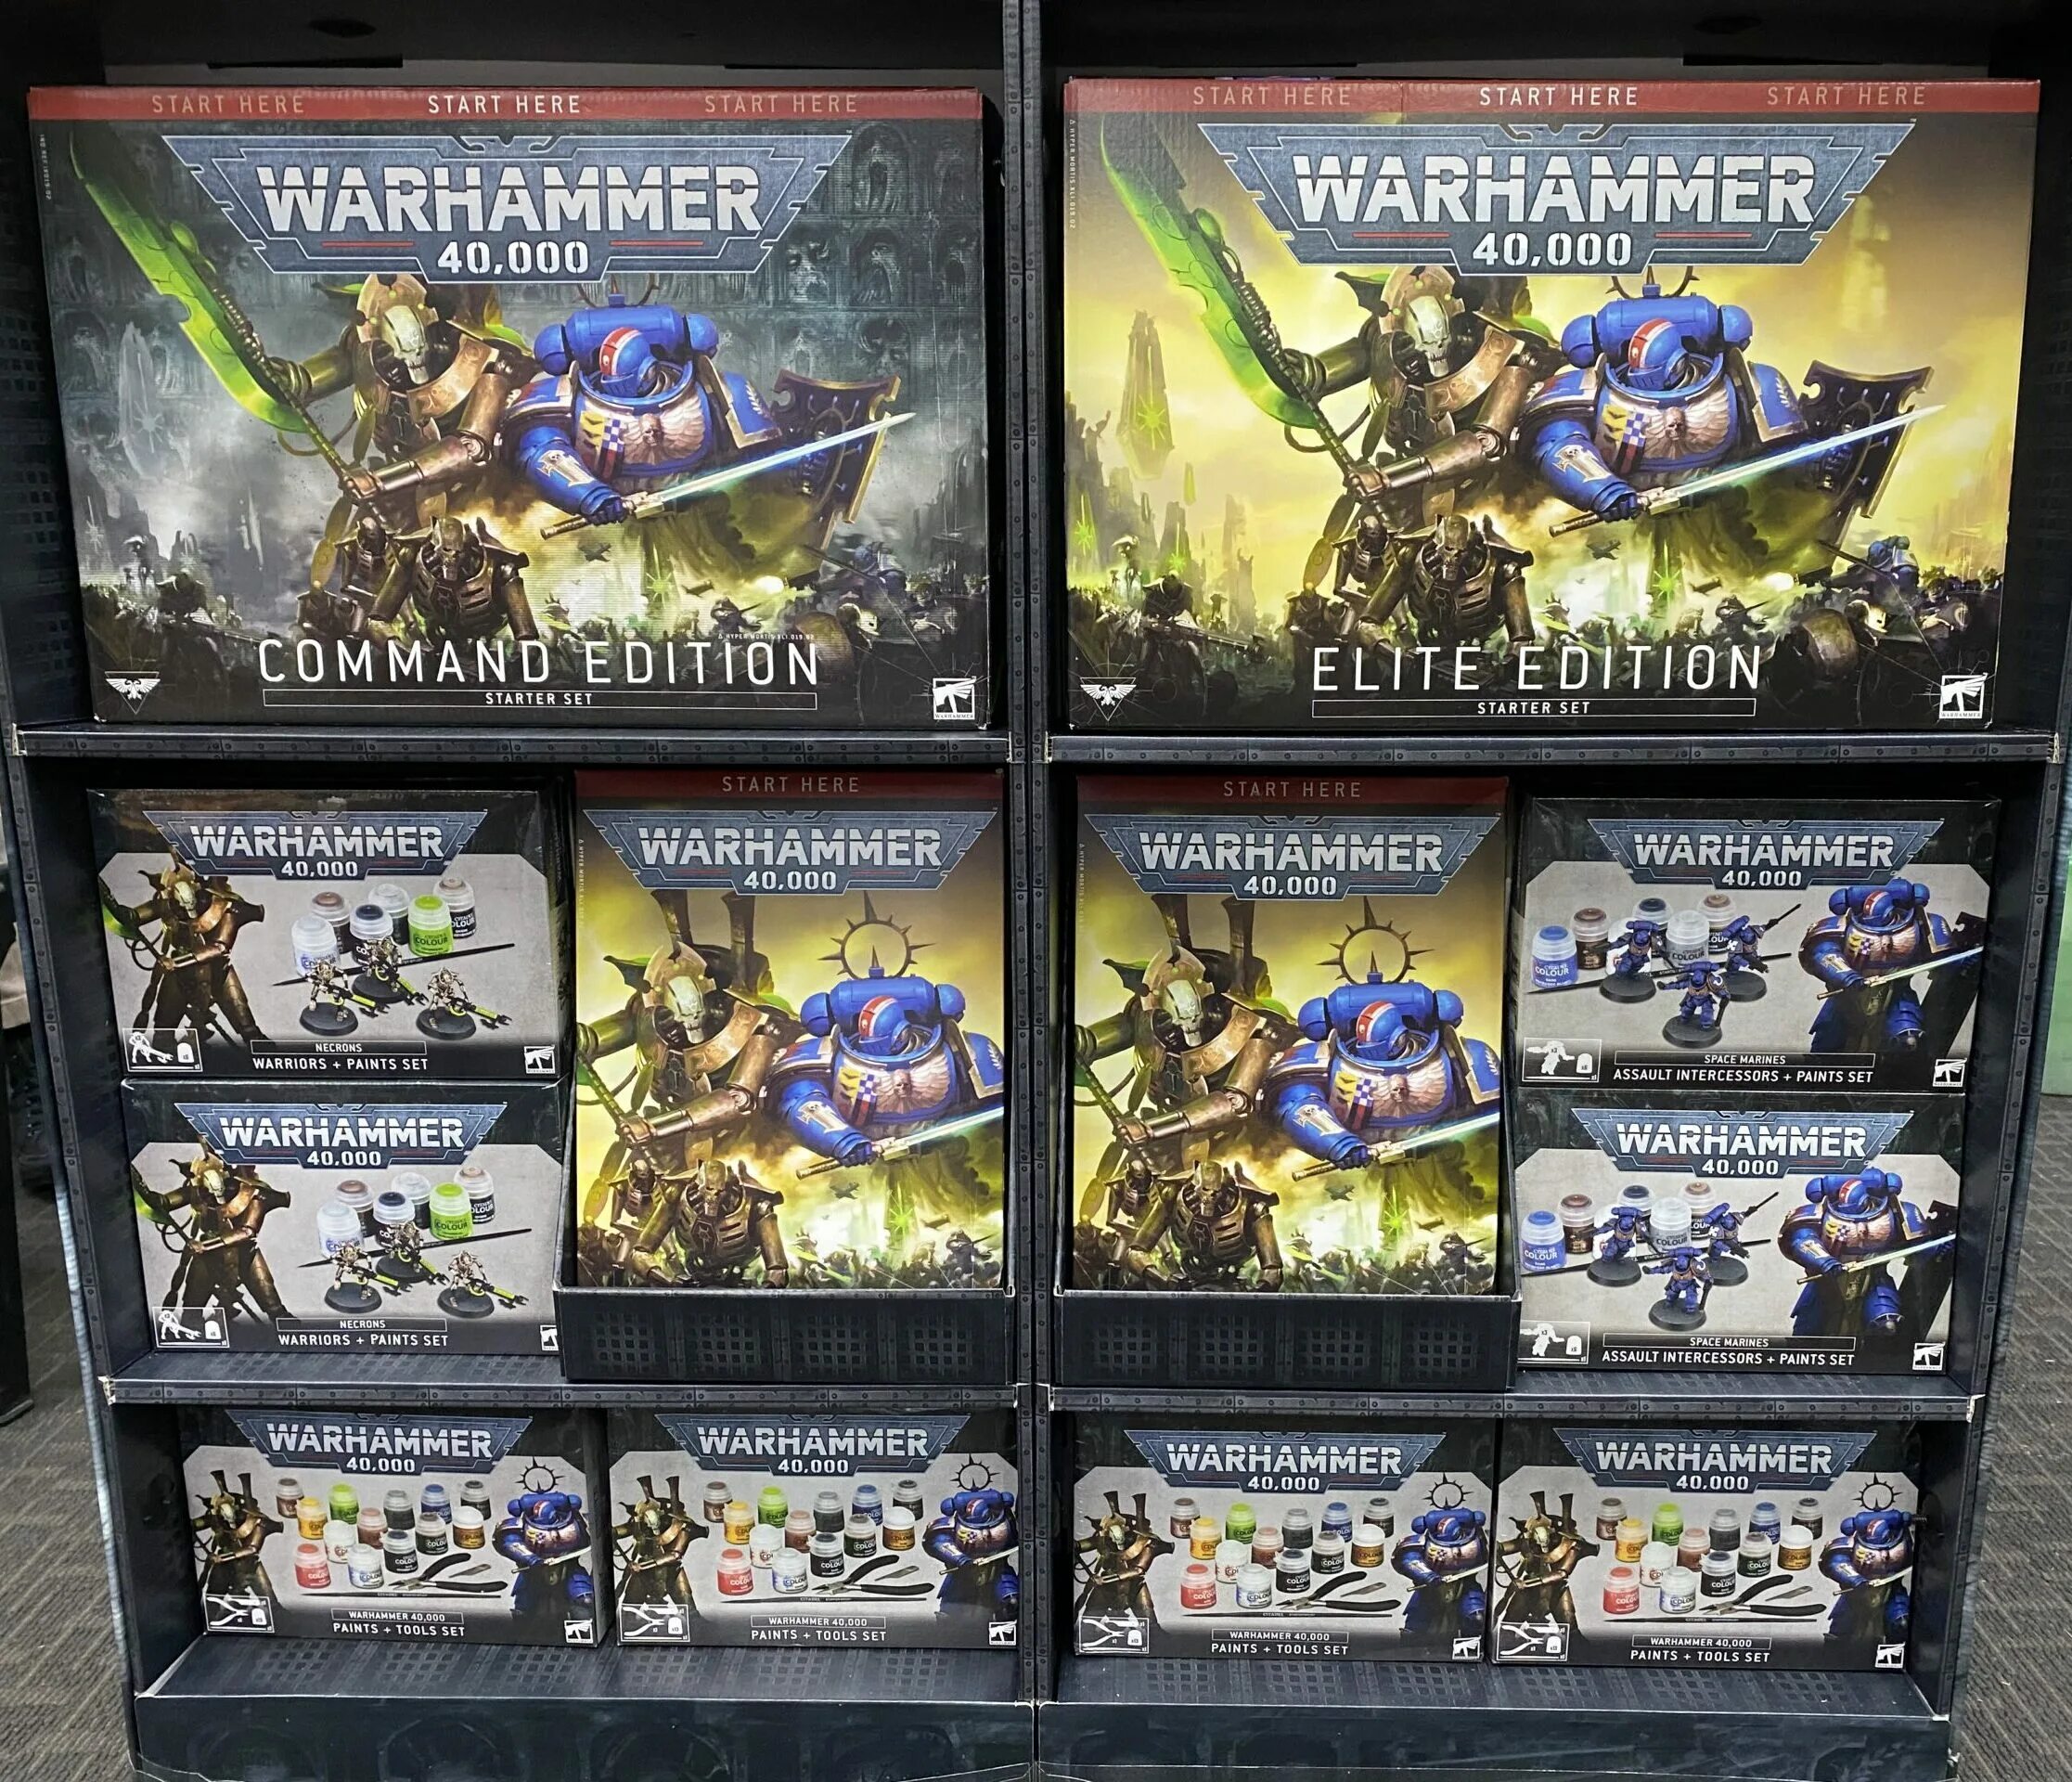 Warhammer starter. Warhammer 40000 Starter Command Edition. Warhammer 40,000: Recruit Edition Starter Set. Warhammer 40000 Starter Set. Warhammer 40000 Recruit Edition Starter Set.